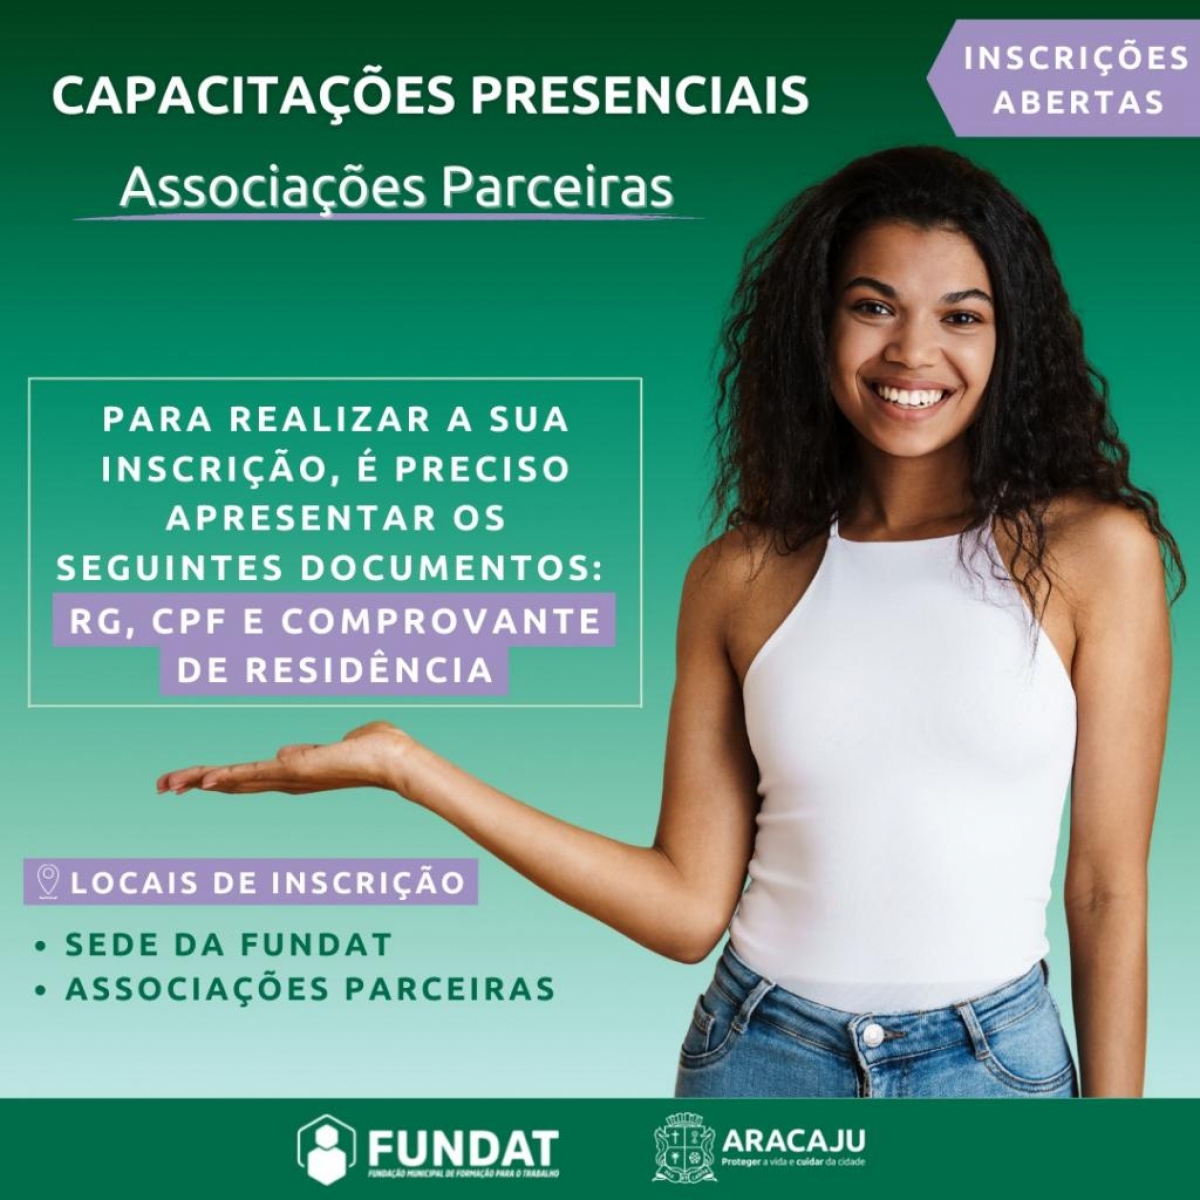 Prefeitura de Aracaju abre 250 vagas para capacitações presenciais da Fundat - Imagem: Fundat